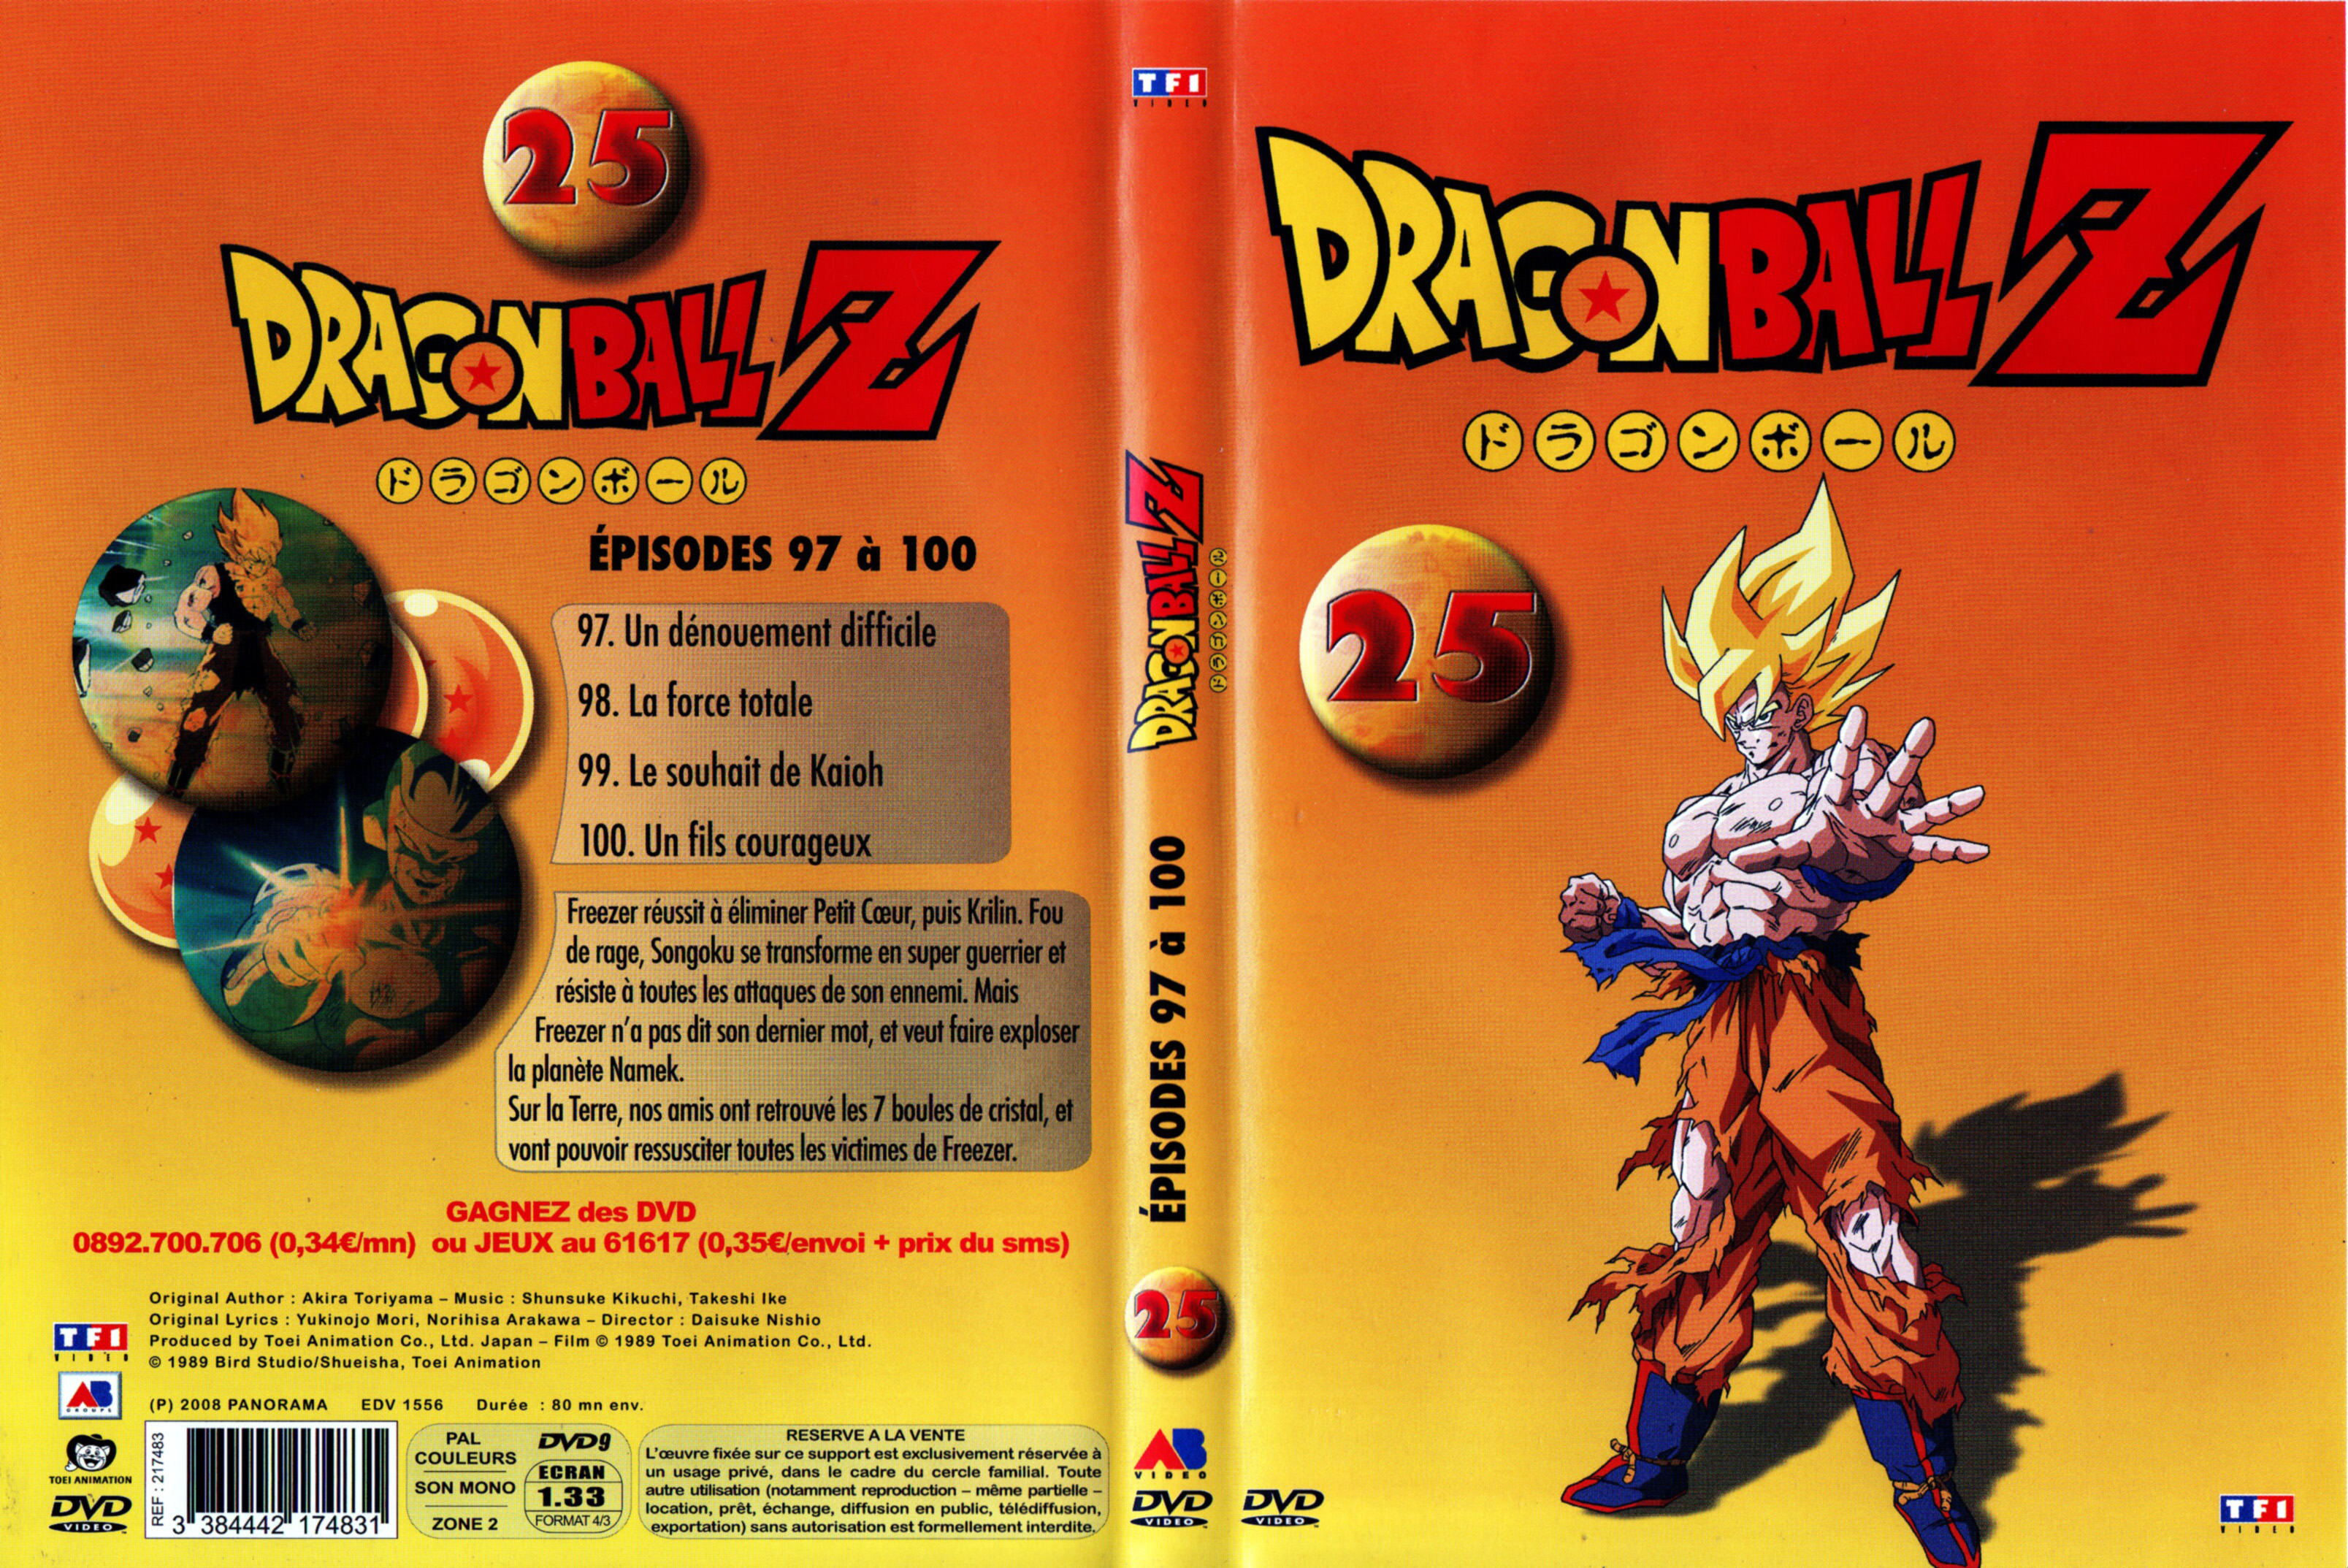 Jaquette DVD Dragon Ball Z vol 25 v2